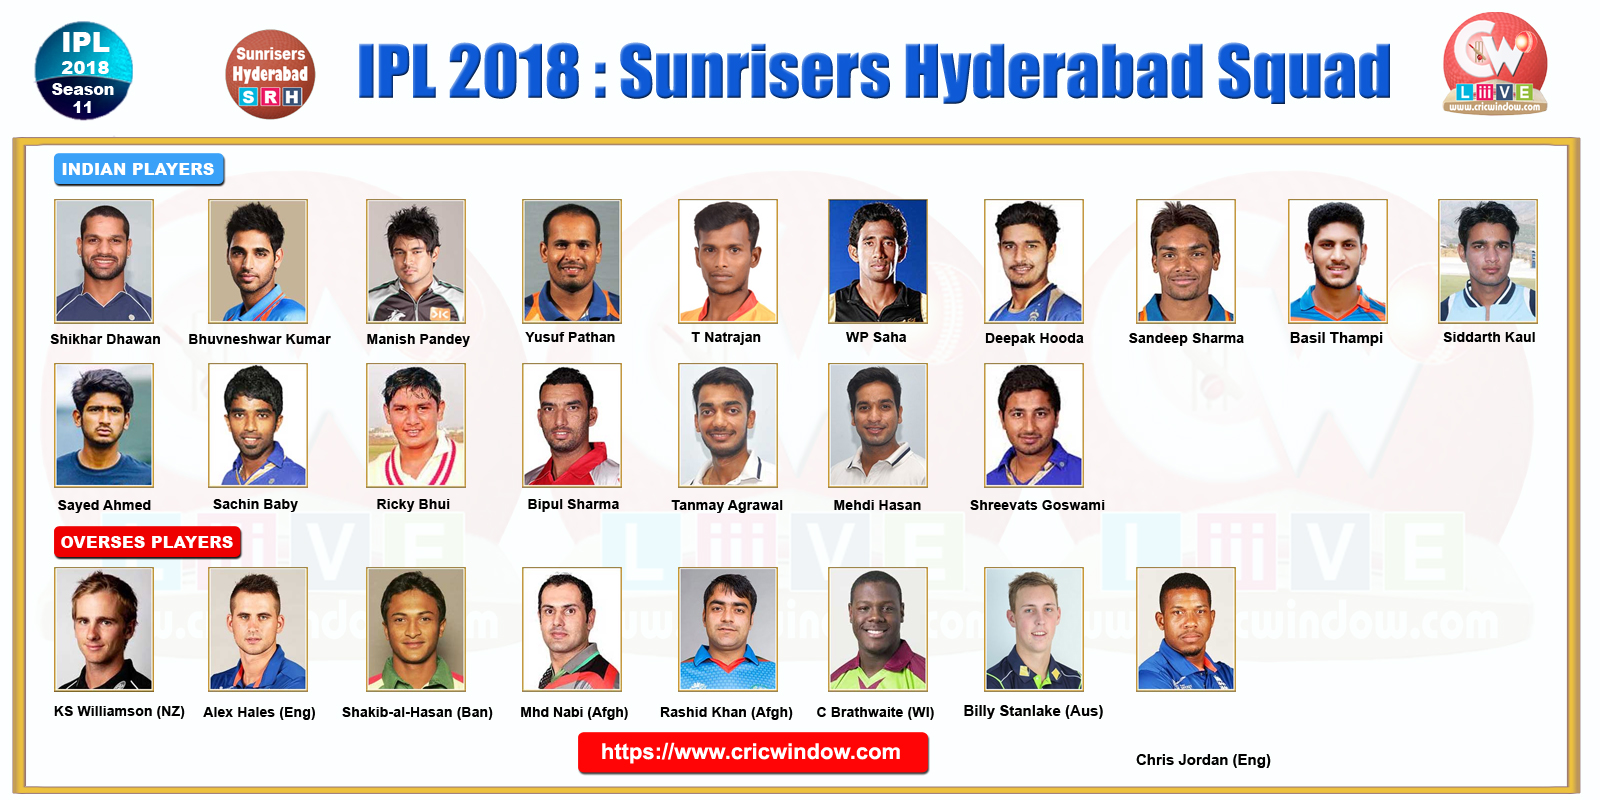 IPLT20 Hyderabad Squad 2018